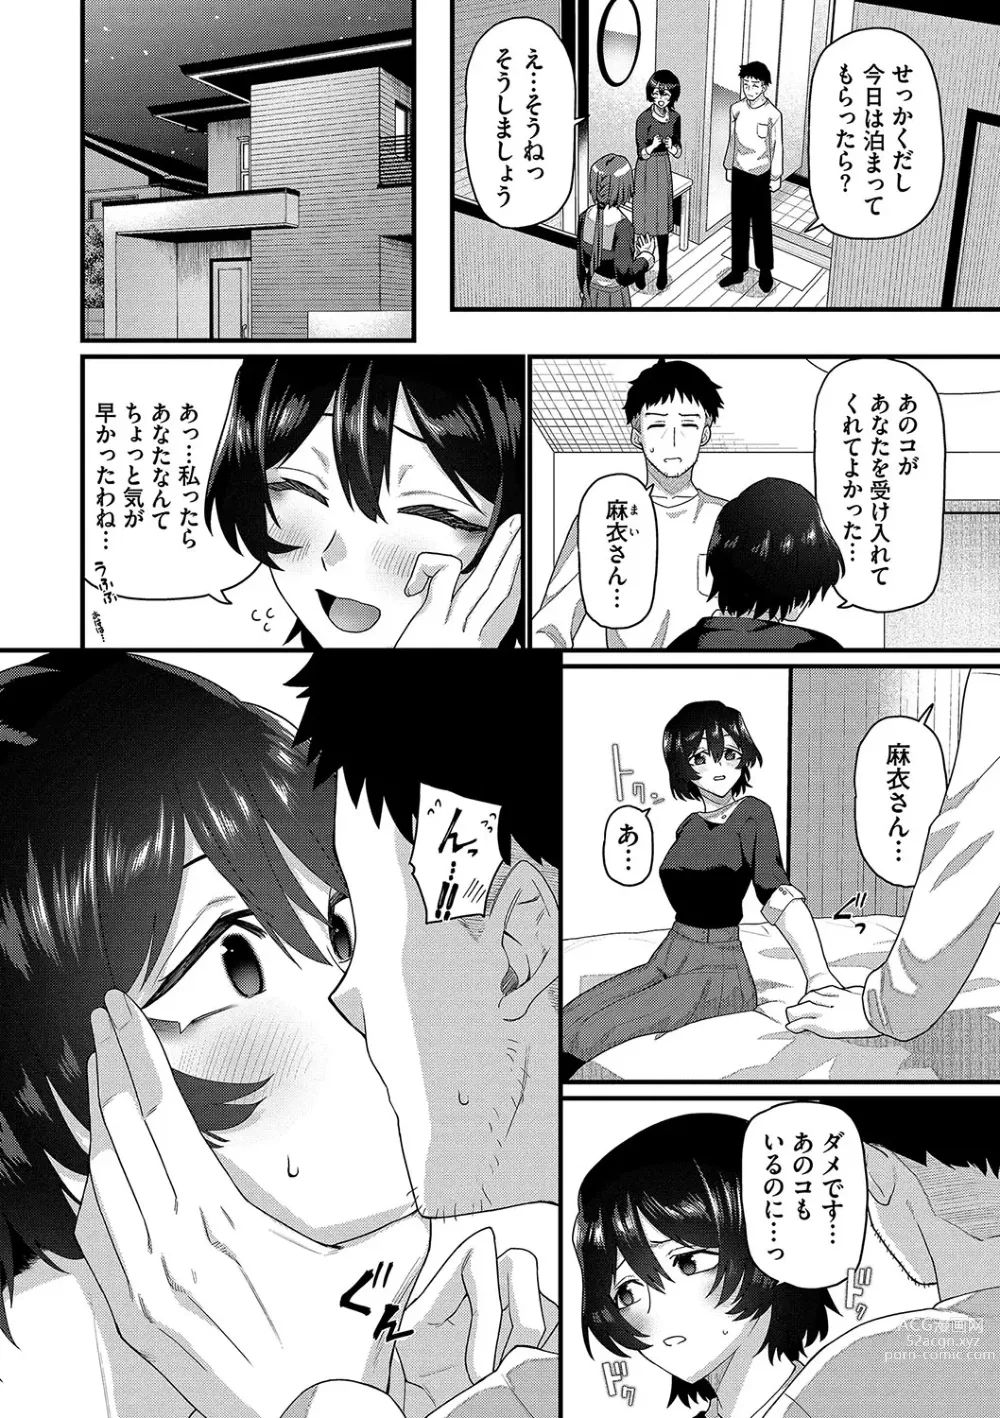 Page 7 of manga Zakoiko